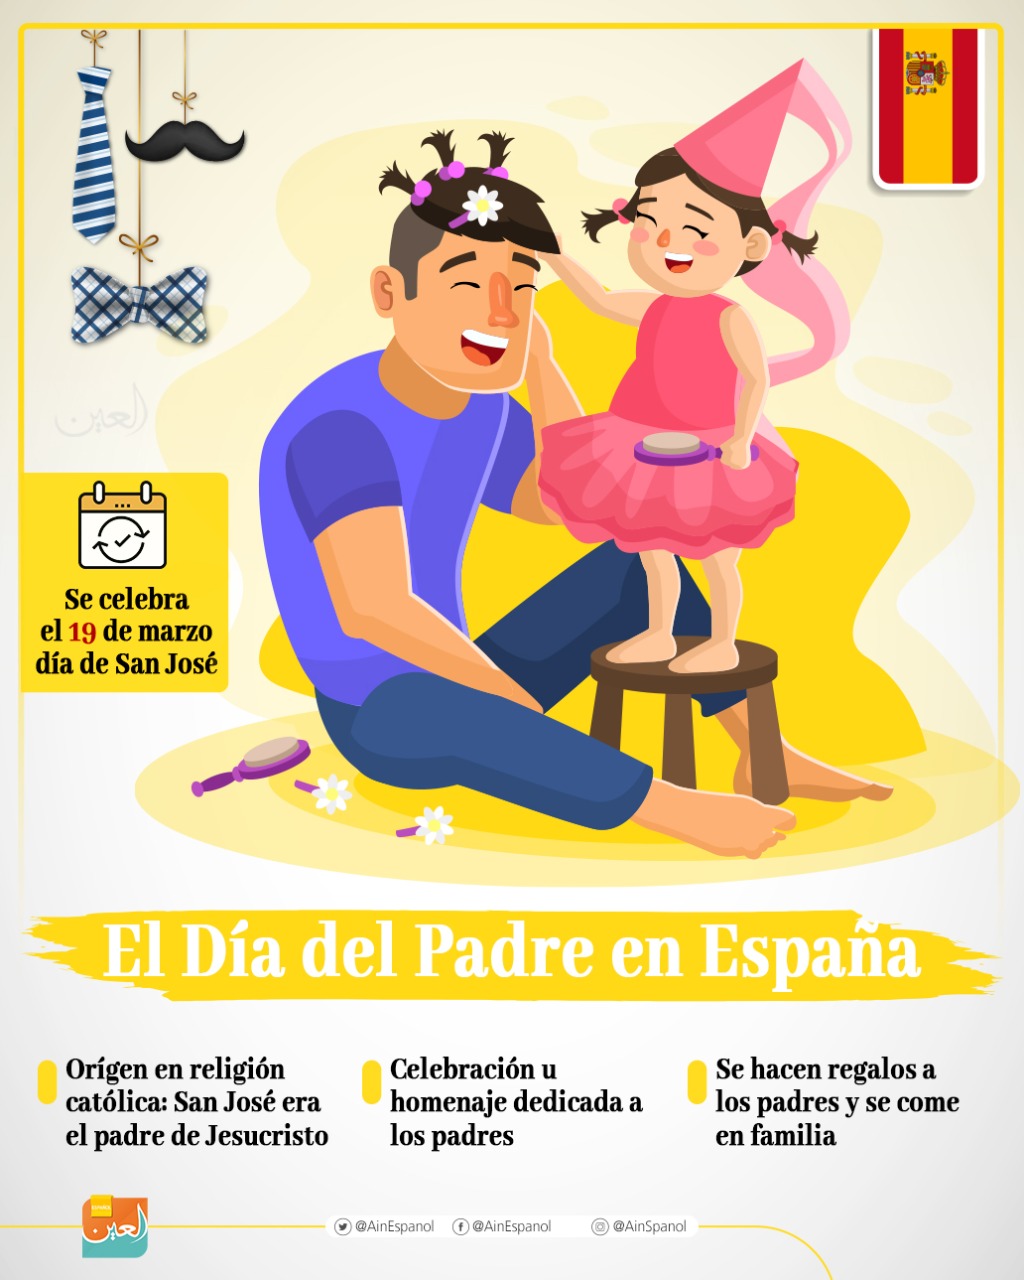 El Día del padre en España